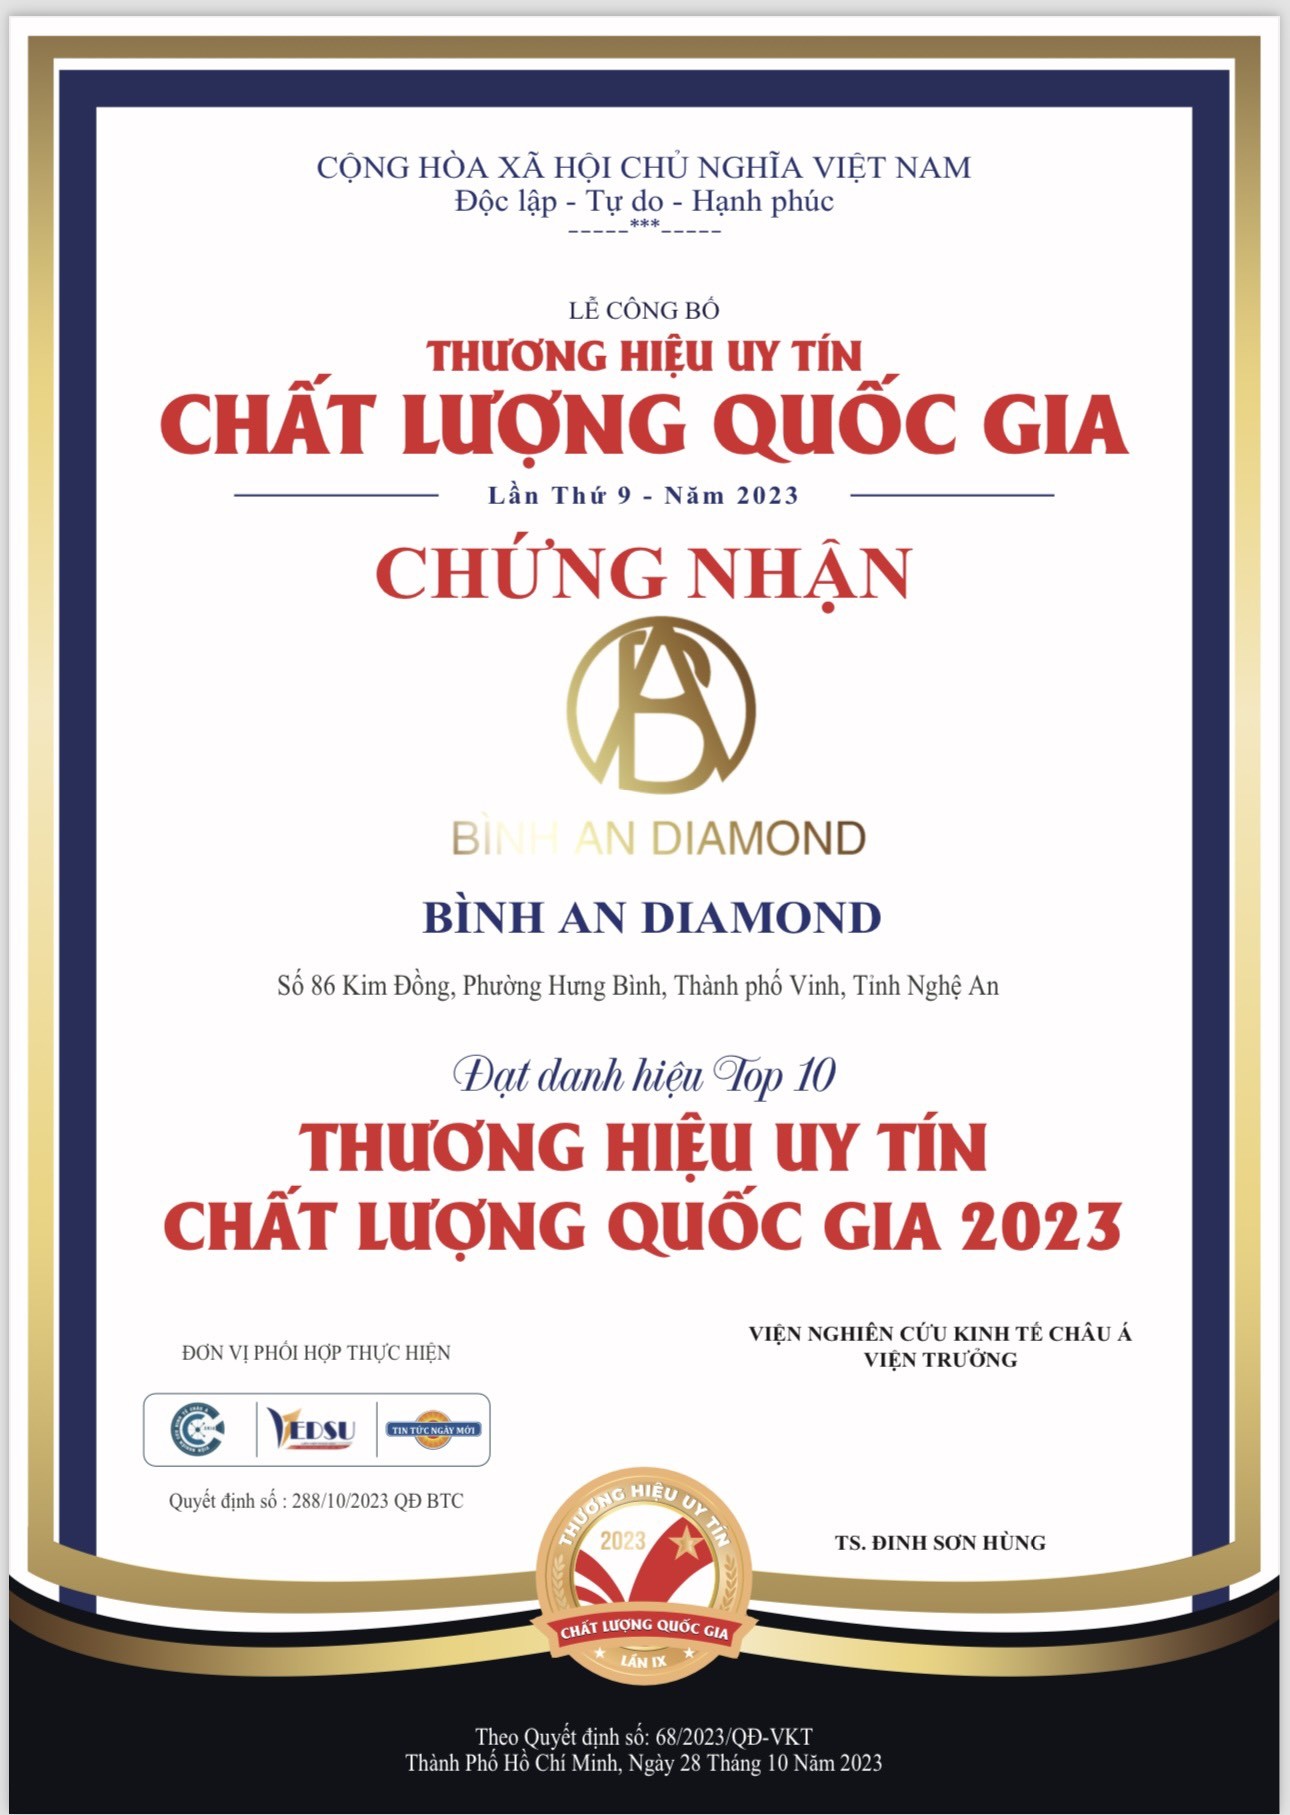 Doanh nhân Nguyễn Hoàng Huy và đam mê với thương hiệu Bình An Diamond